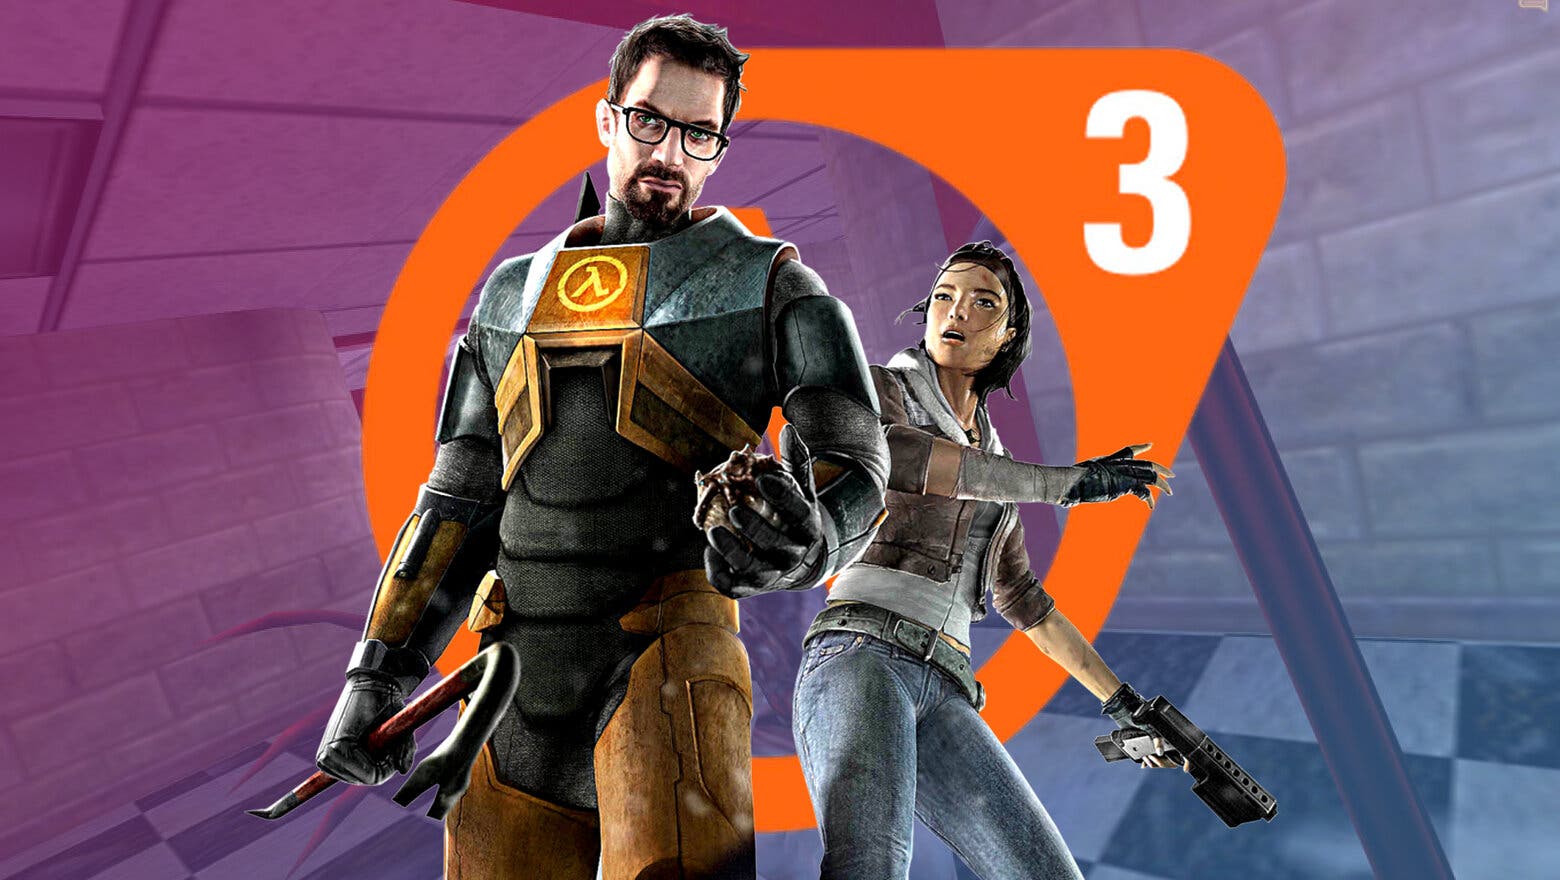 Render de protagonistas de la saga Half-Life junto a un logo de Half-Life 3 hecho por fans